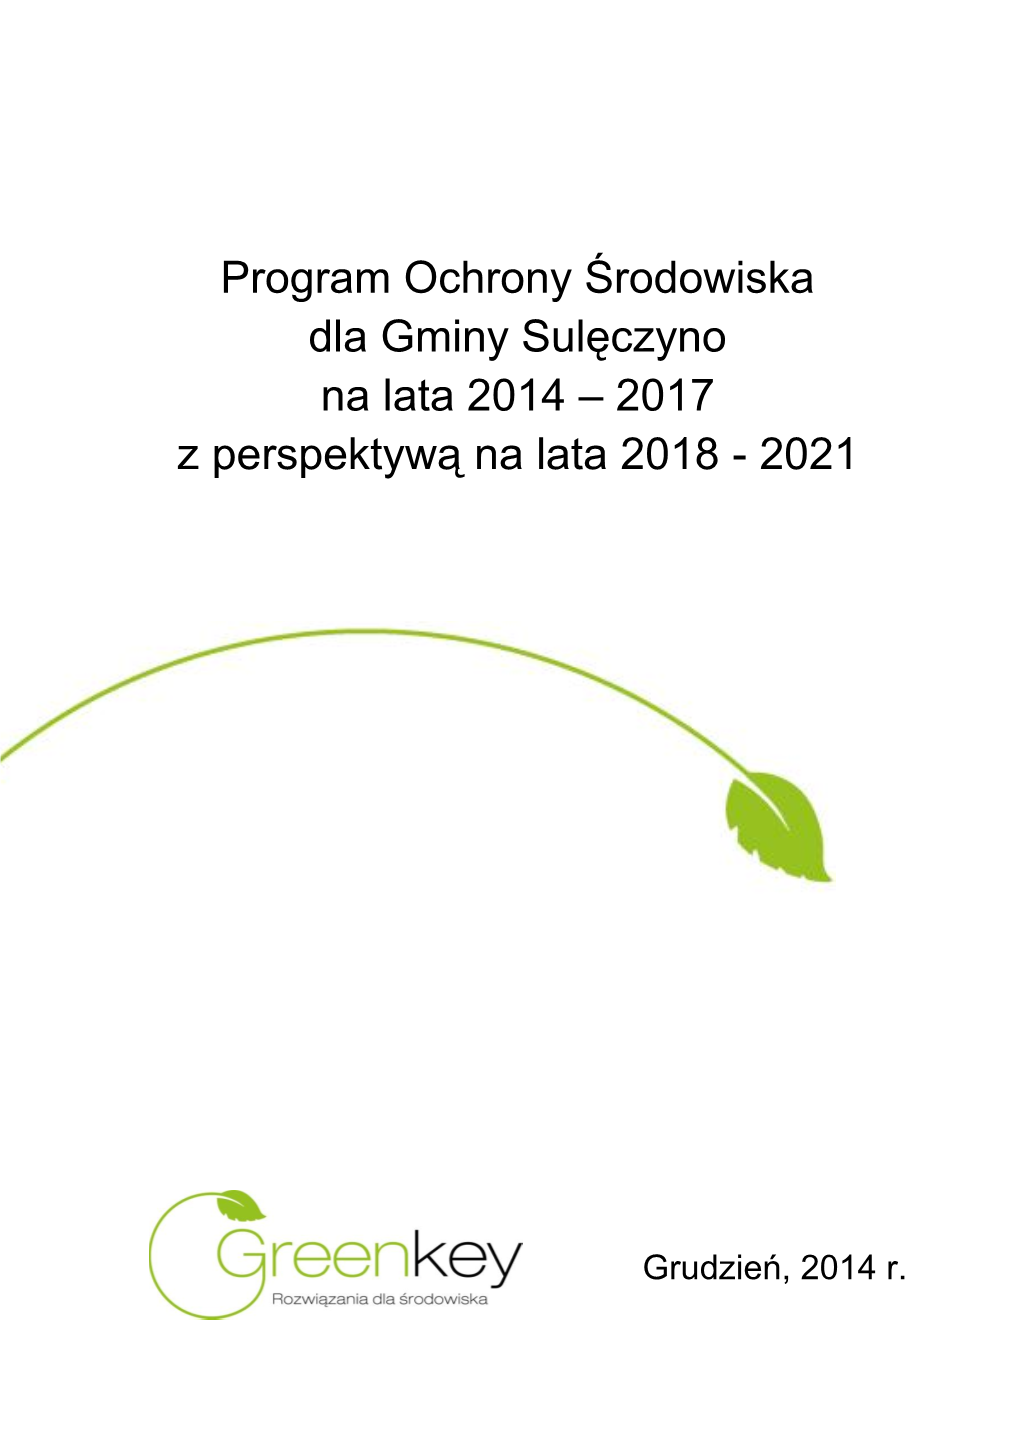 Program Ochrony Środowiska Dla Gminy Sulęczyno Na Lata 2014 – 2017 Z Perspektywą Na Lata 2018 - 2021